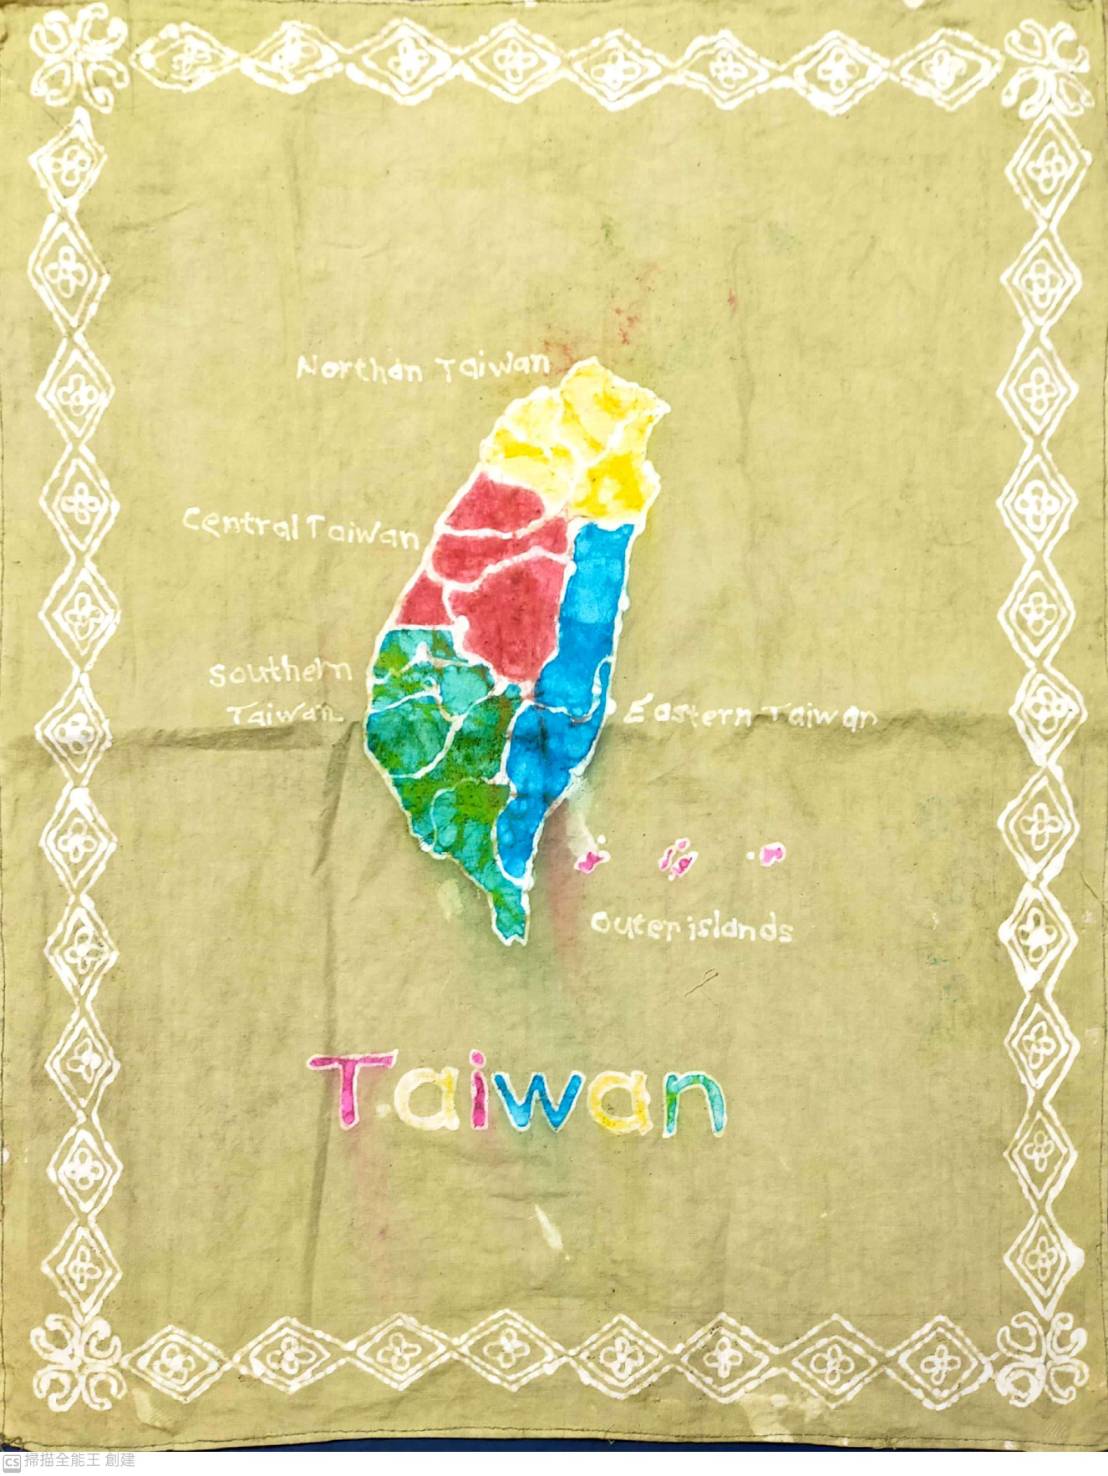 Kết hợp văn hoá nhuộm vải Batik truyền thống và đặc sắc Đài Loan, tác phẩm của Quan Mỹ Liên và con gái Lưu Ngọc Trân được giới nghệ thuật ưa chuộng và nhận lời mời triển lãm nghệ thuật. 